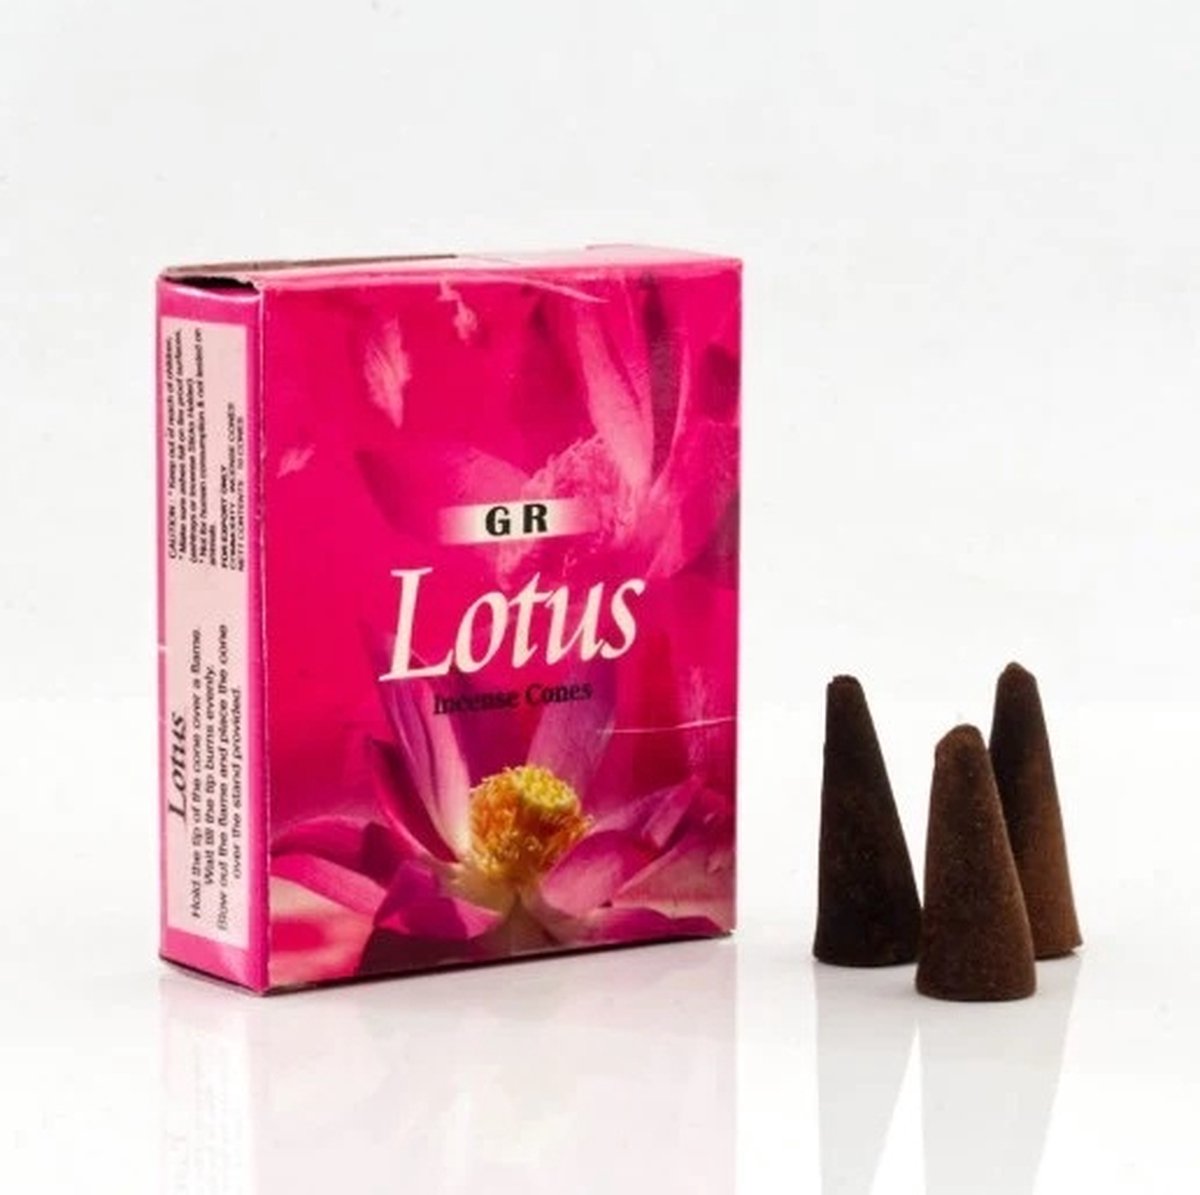 Wierookkegels 'Lotus', GR, 10 cones (20 gram)